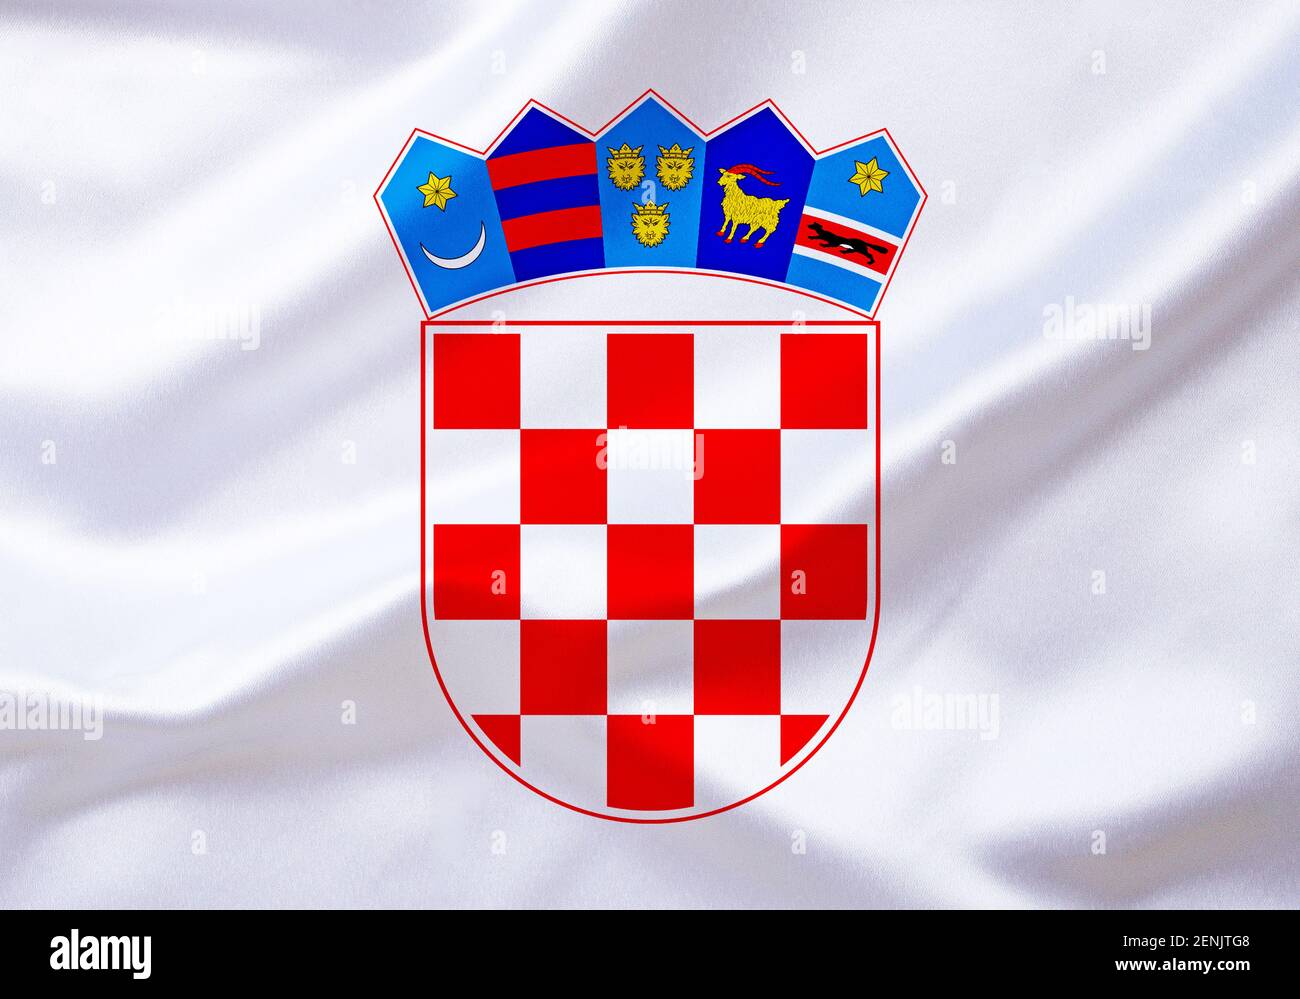 Das Wappen von Kroatien, Republik, Balkanhalbinsel Stock Photo